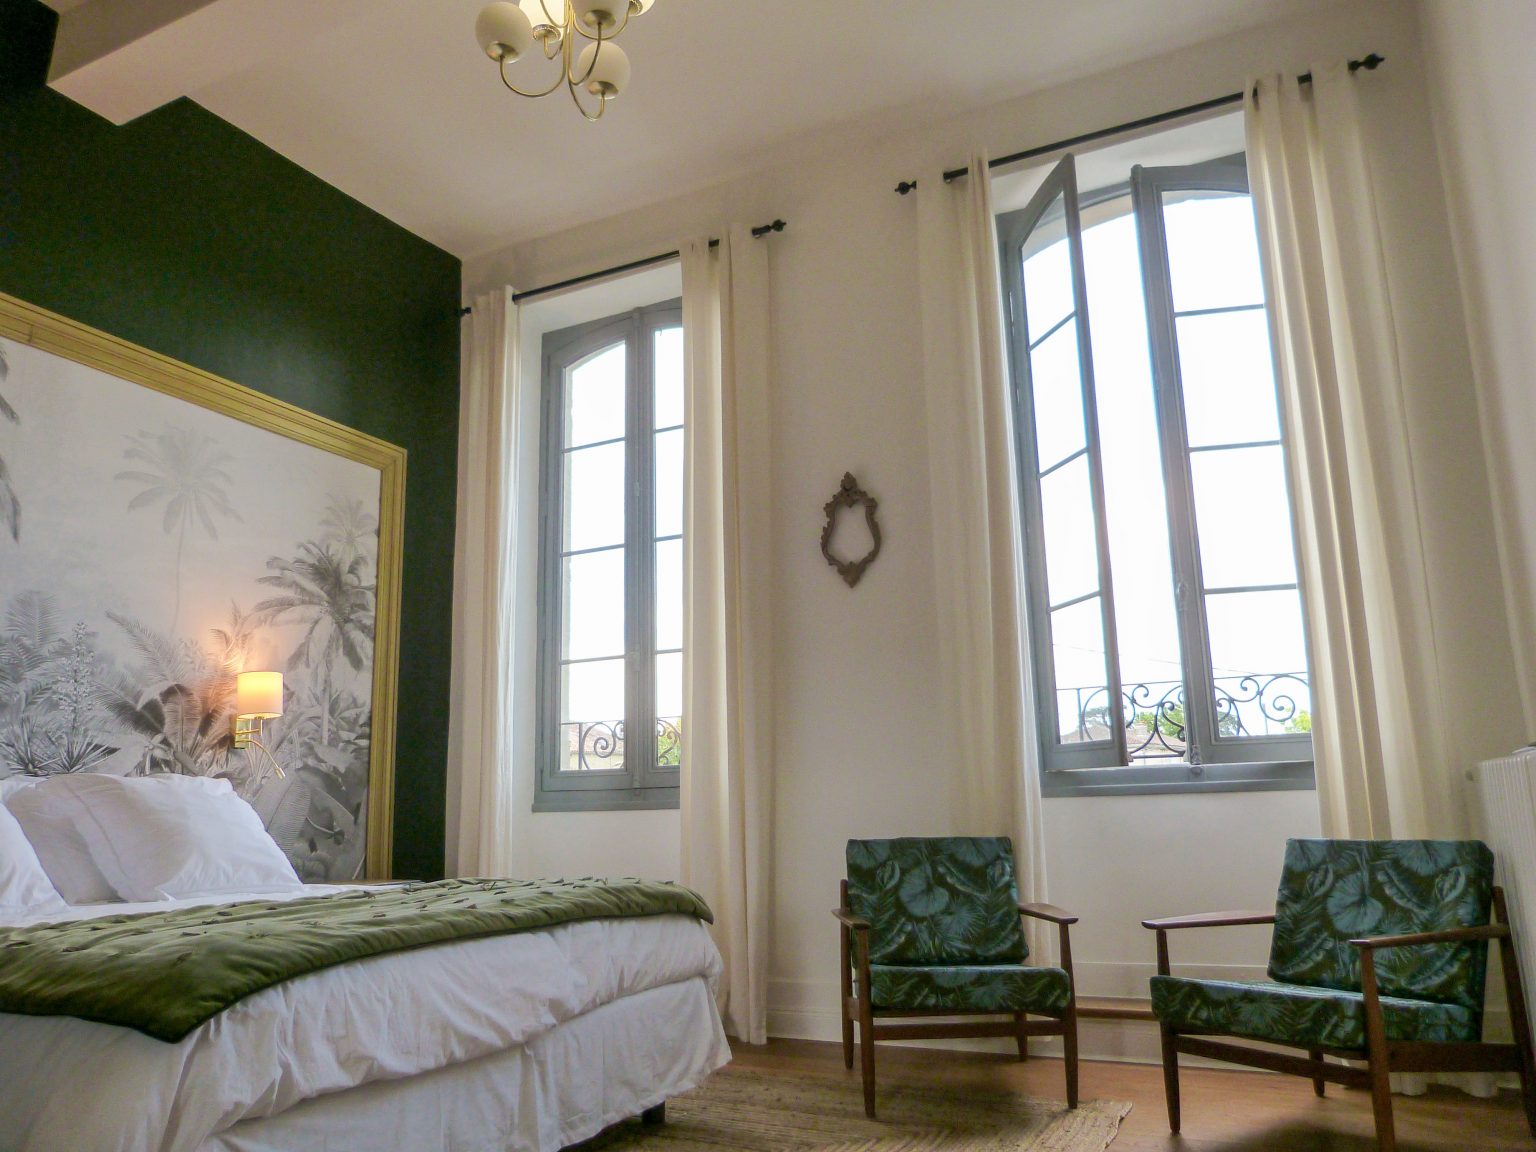 Bedroom 2 has views across Monsegur